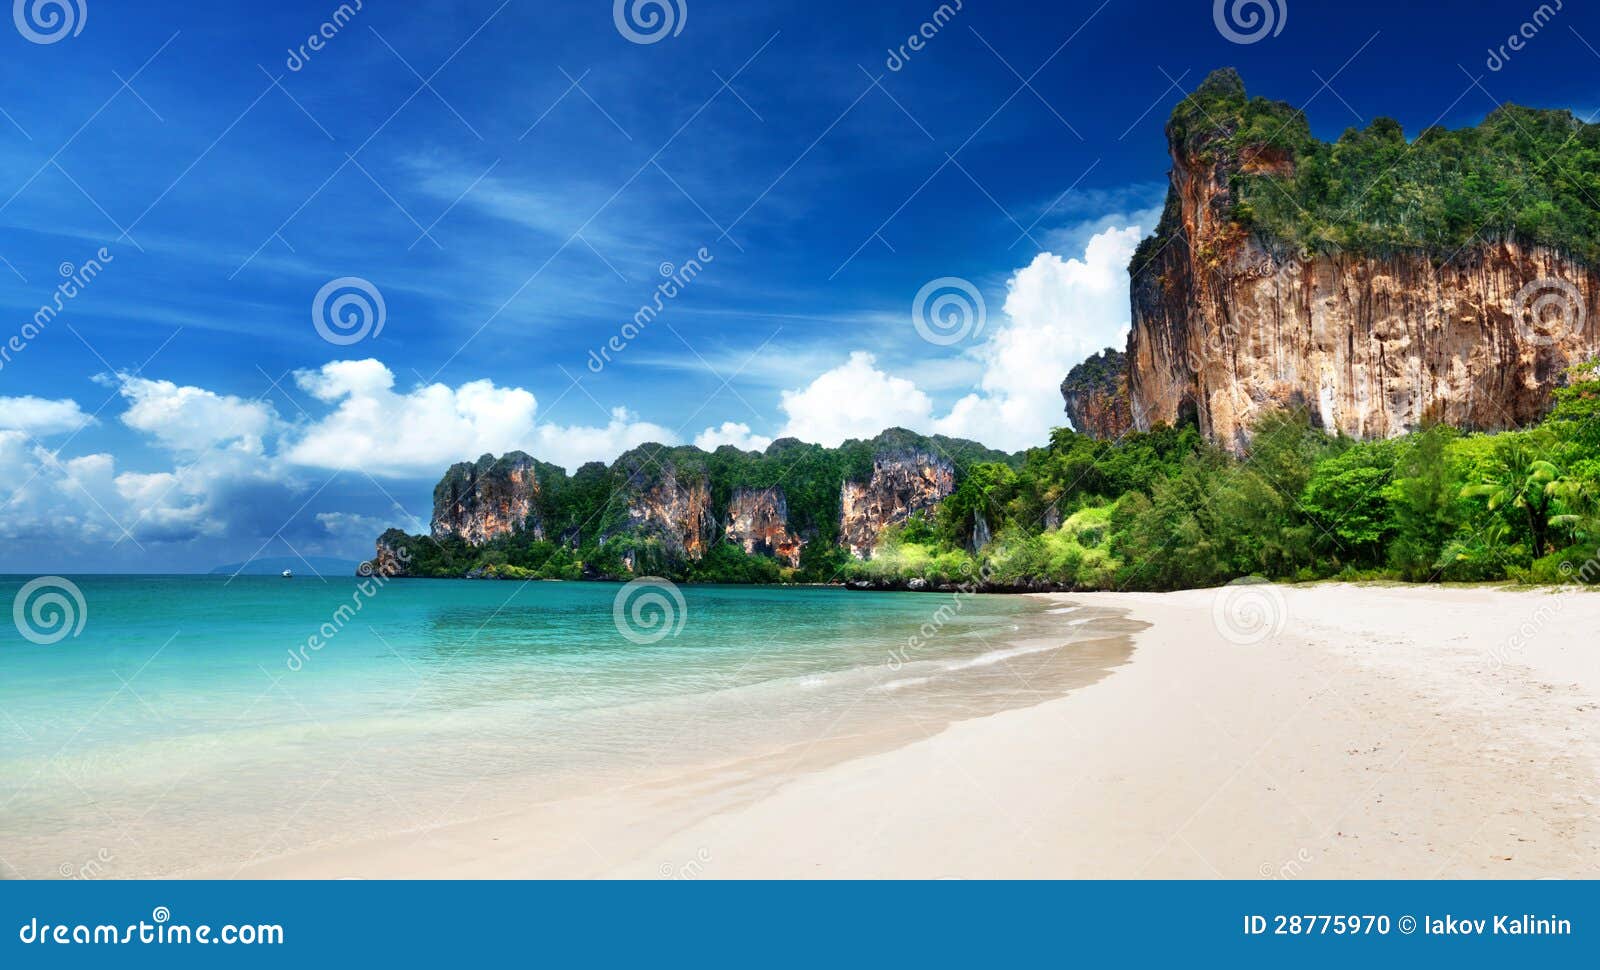 railay beach in krabi thailand